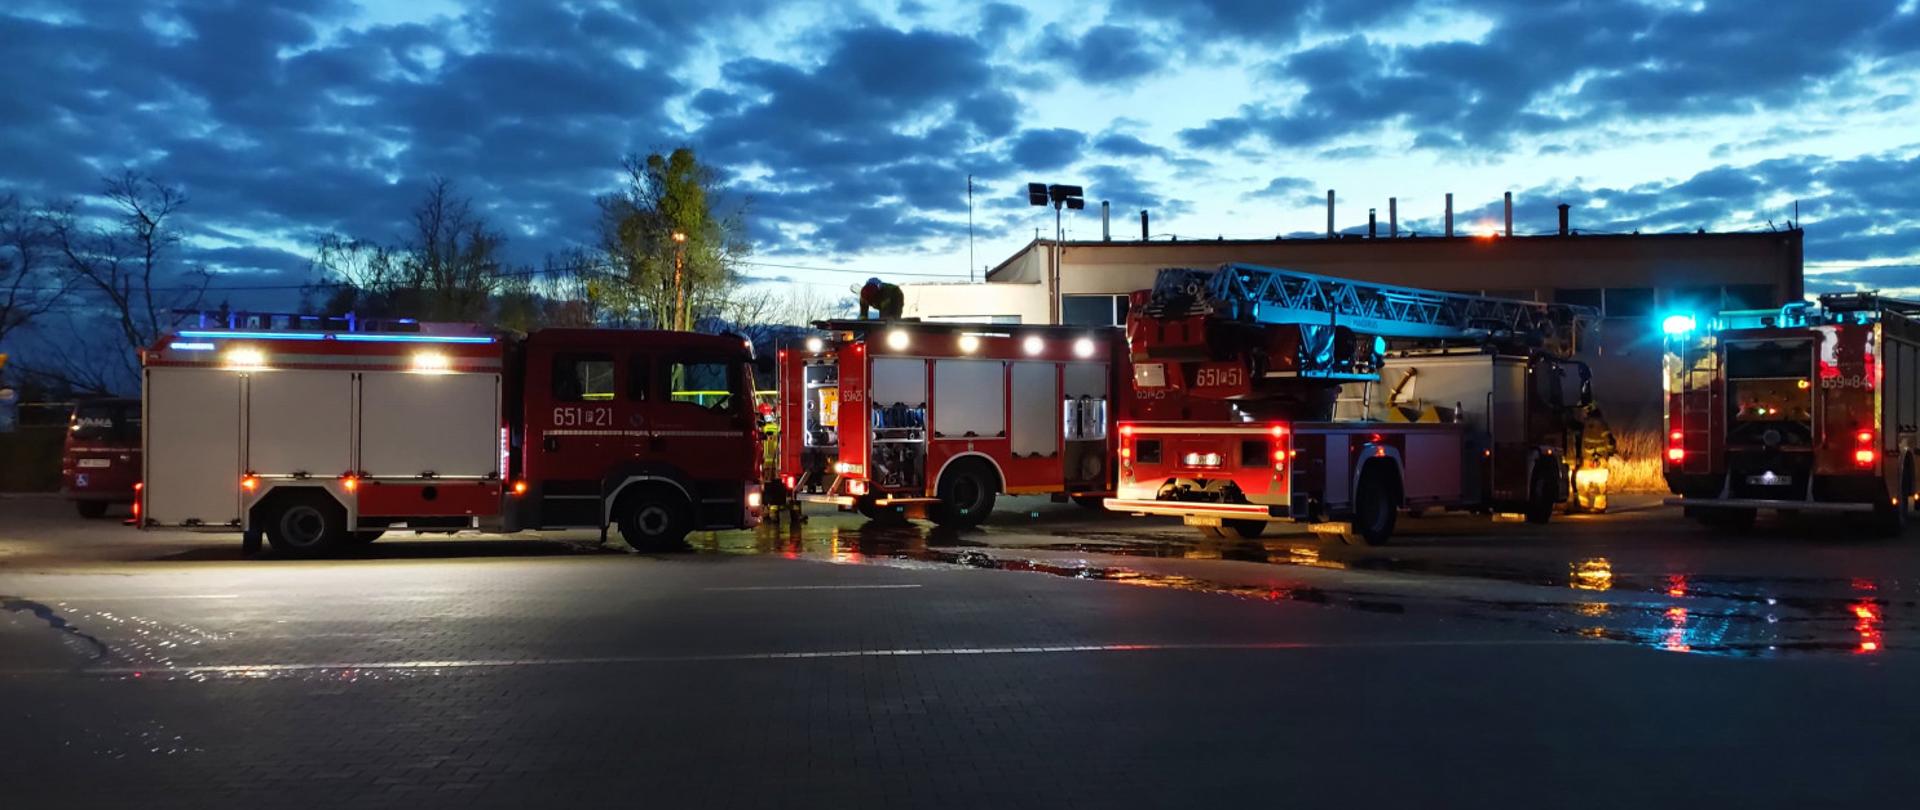 Zdjęcie przedstawia cztery wozy strażackie stojące przed budynkiem